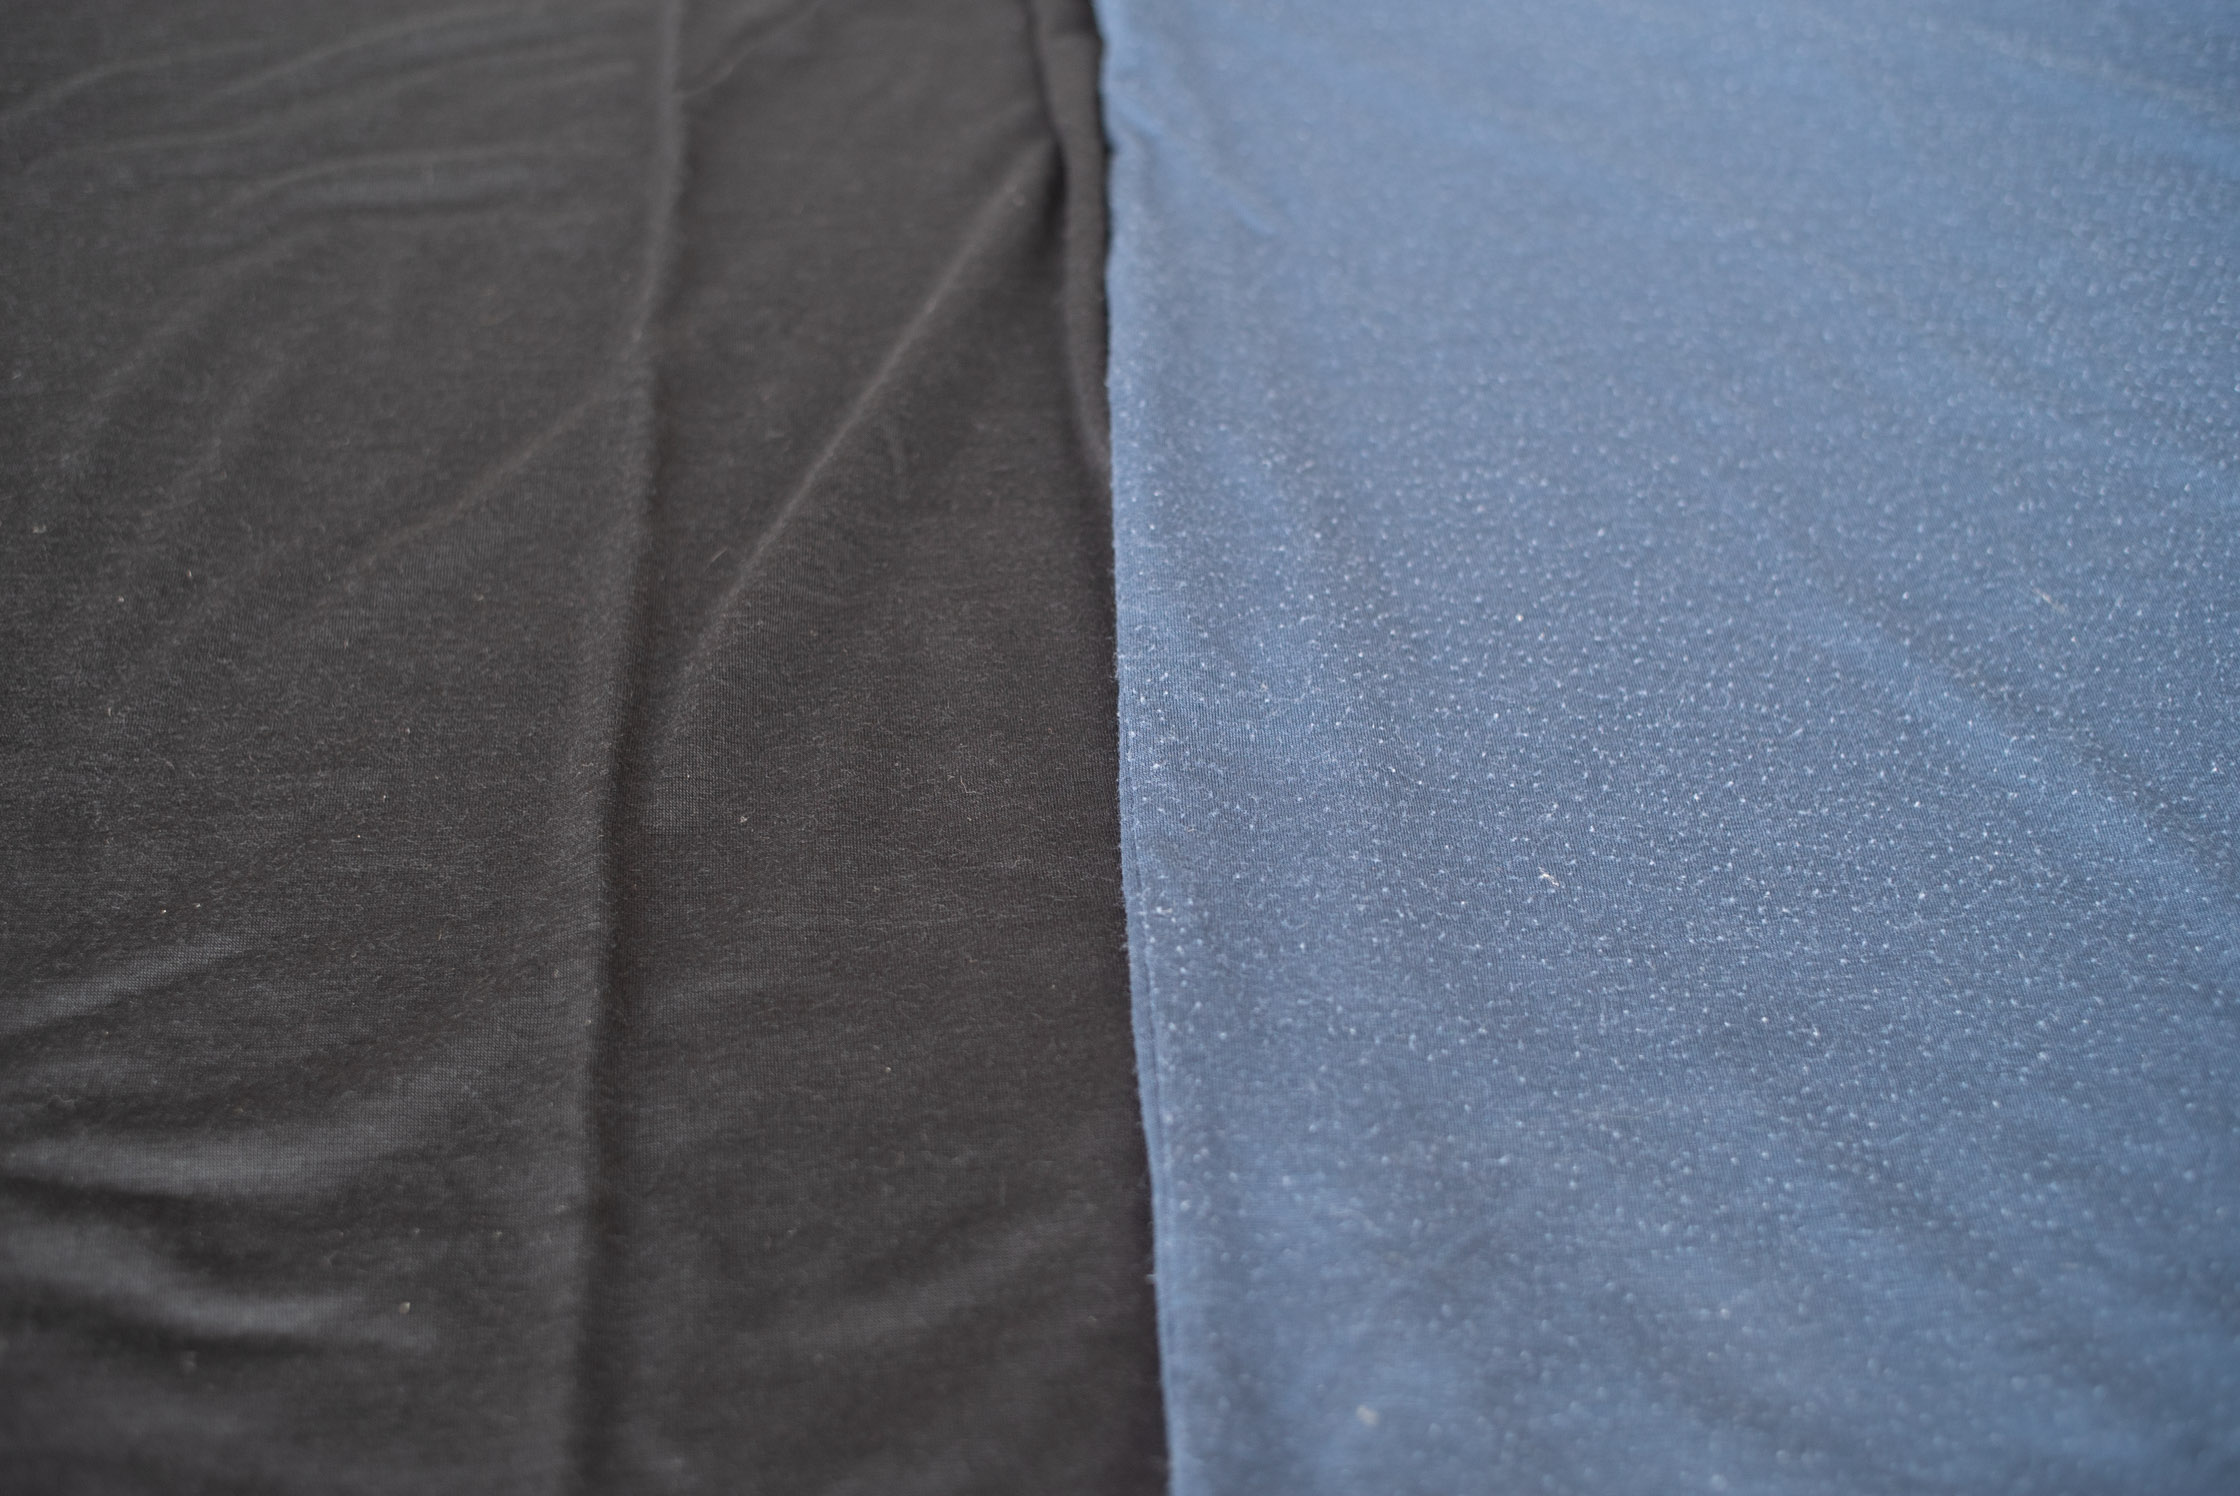 Left: New Runweight Merino T-shirt in Black VS. Right: Used Runweight Merino T-shirt in Sea Blue